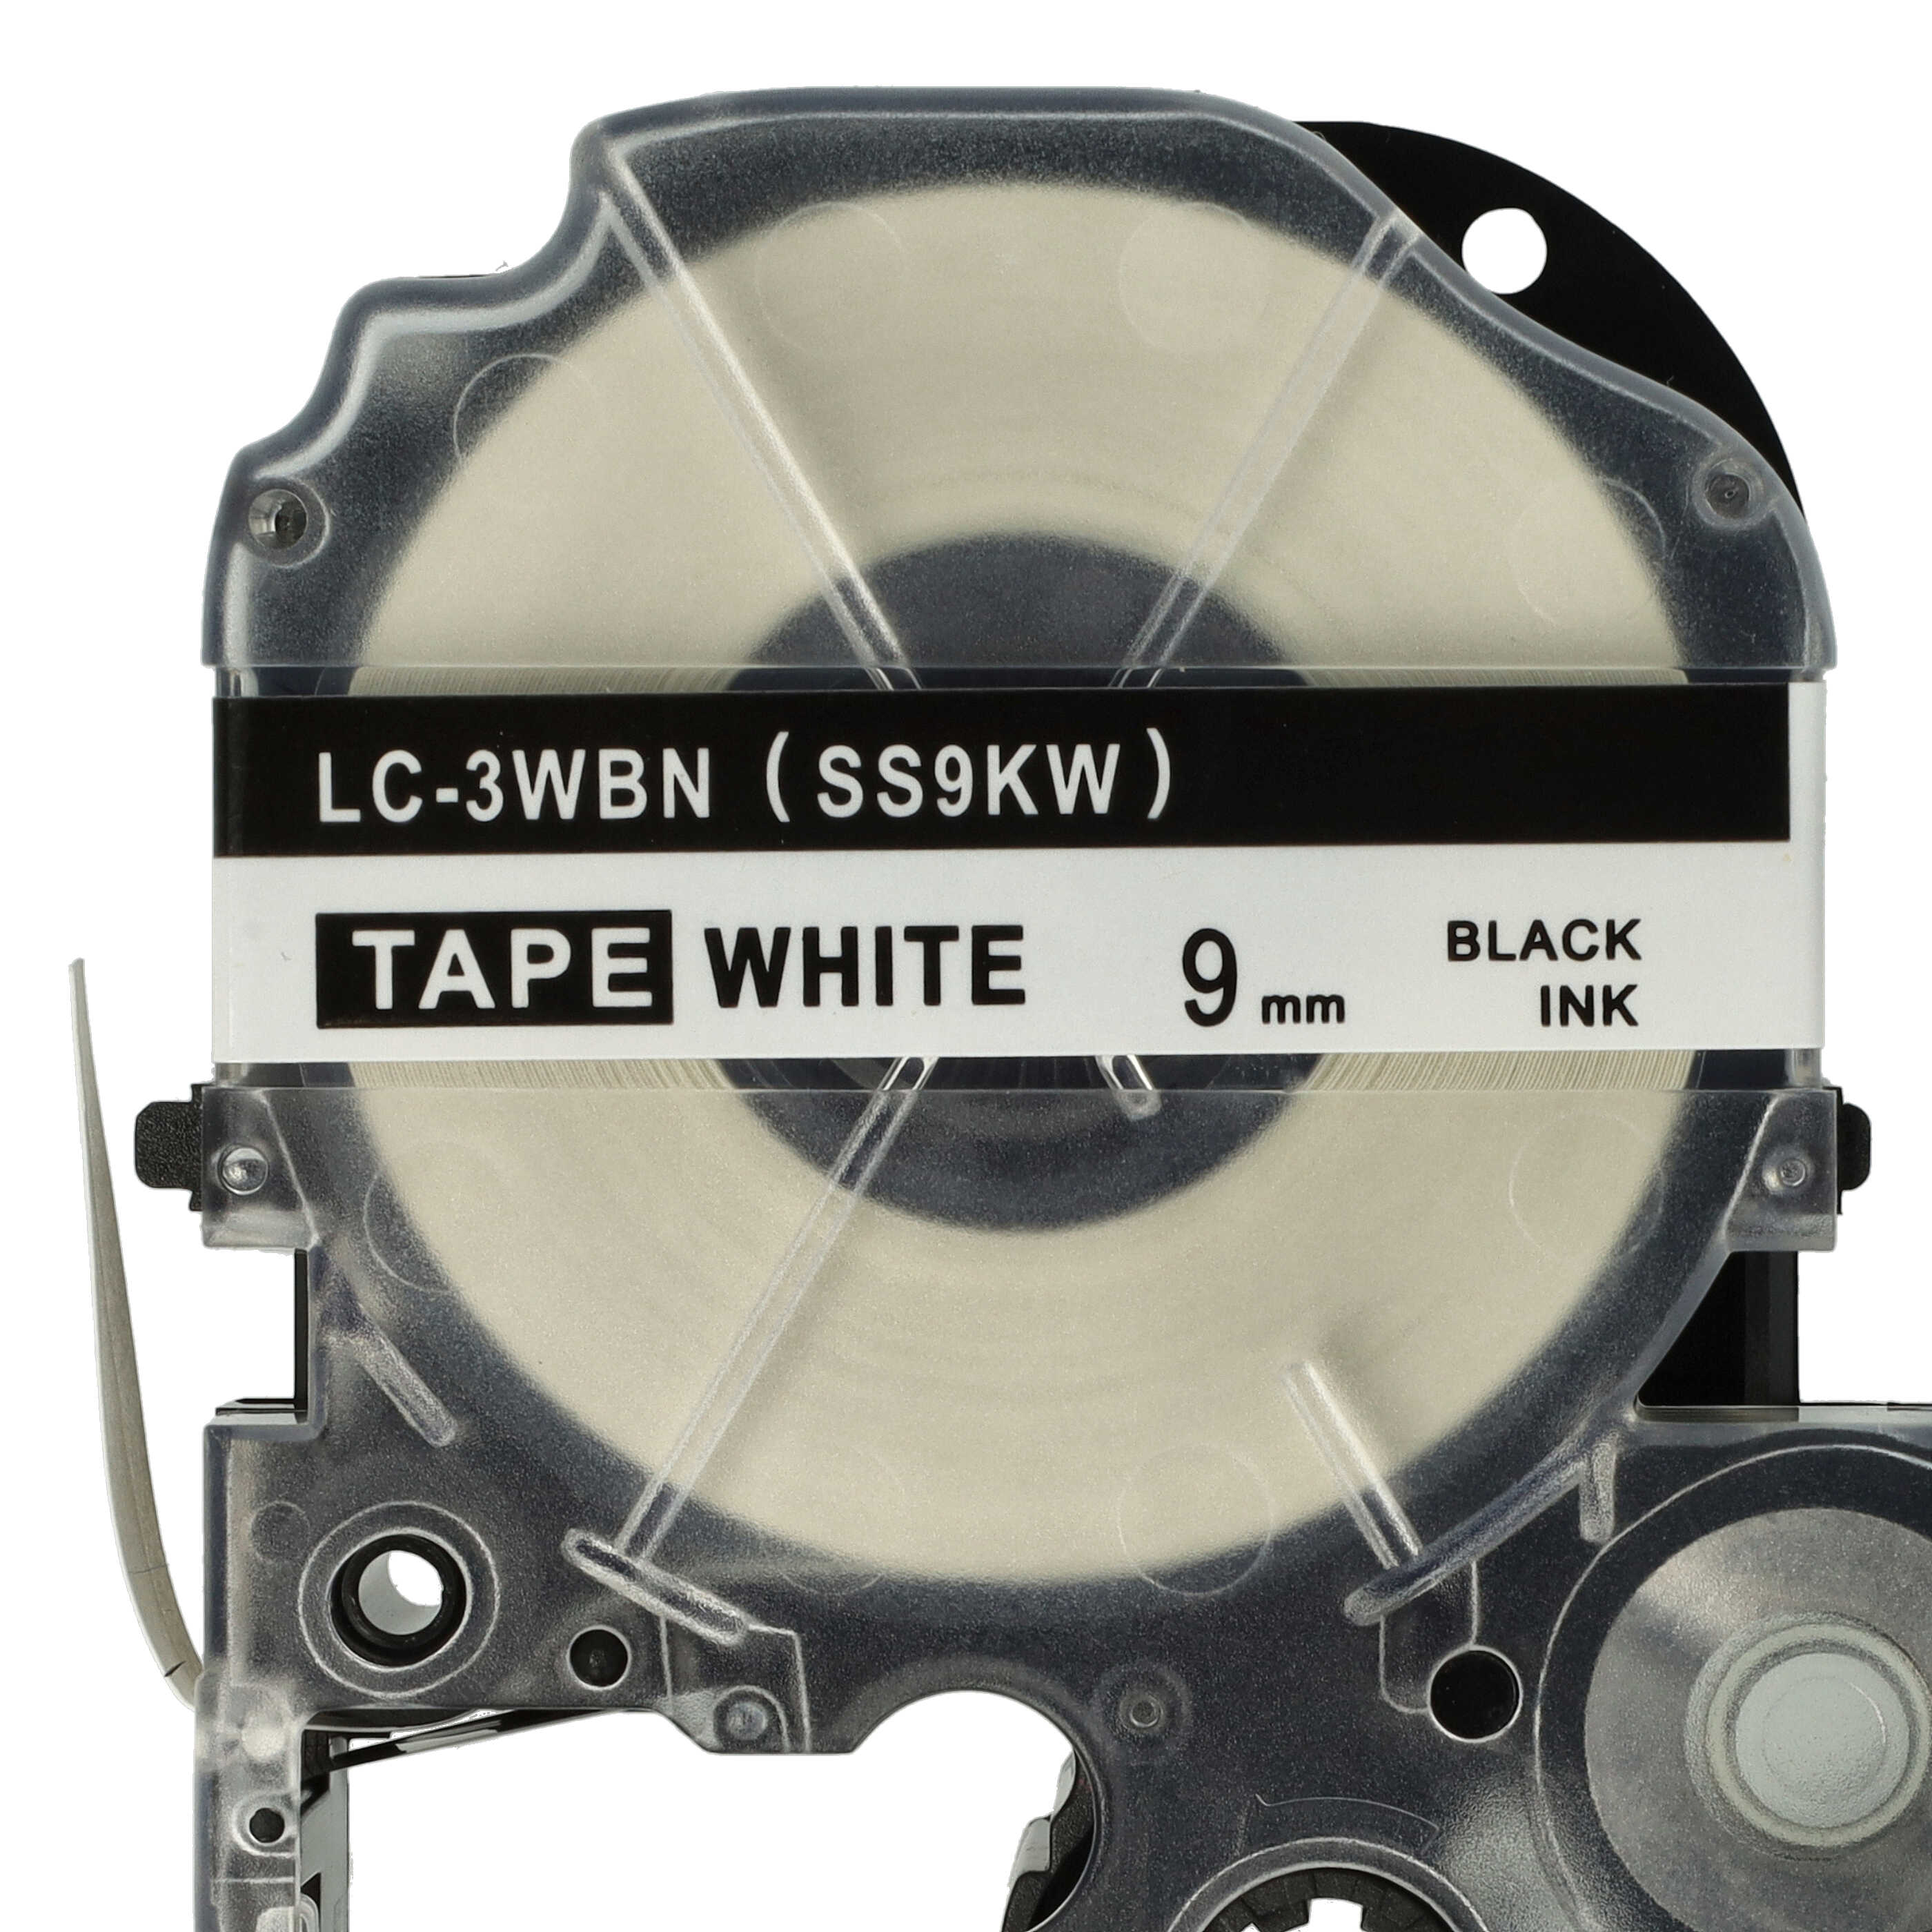 2x Schriftband als Ersatz für Epson SS9KW, LC-3WBN - 9mm Schwarz auf Weiß